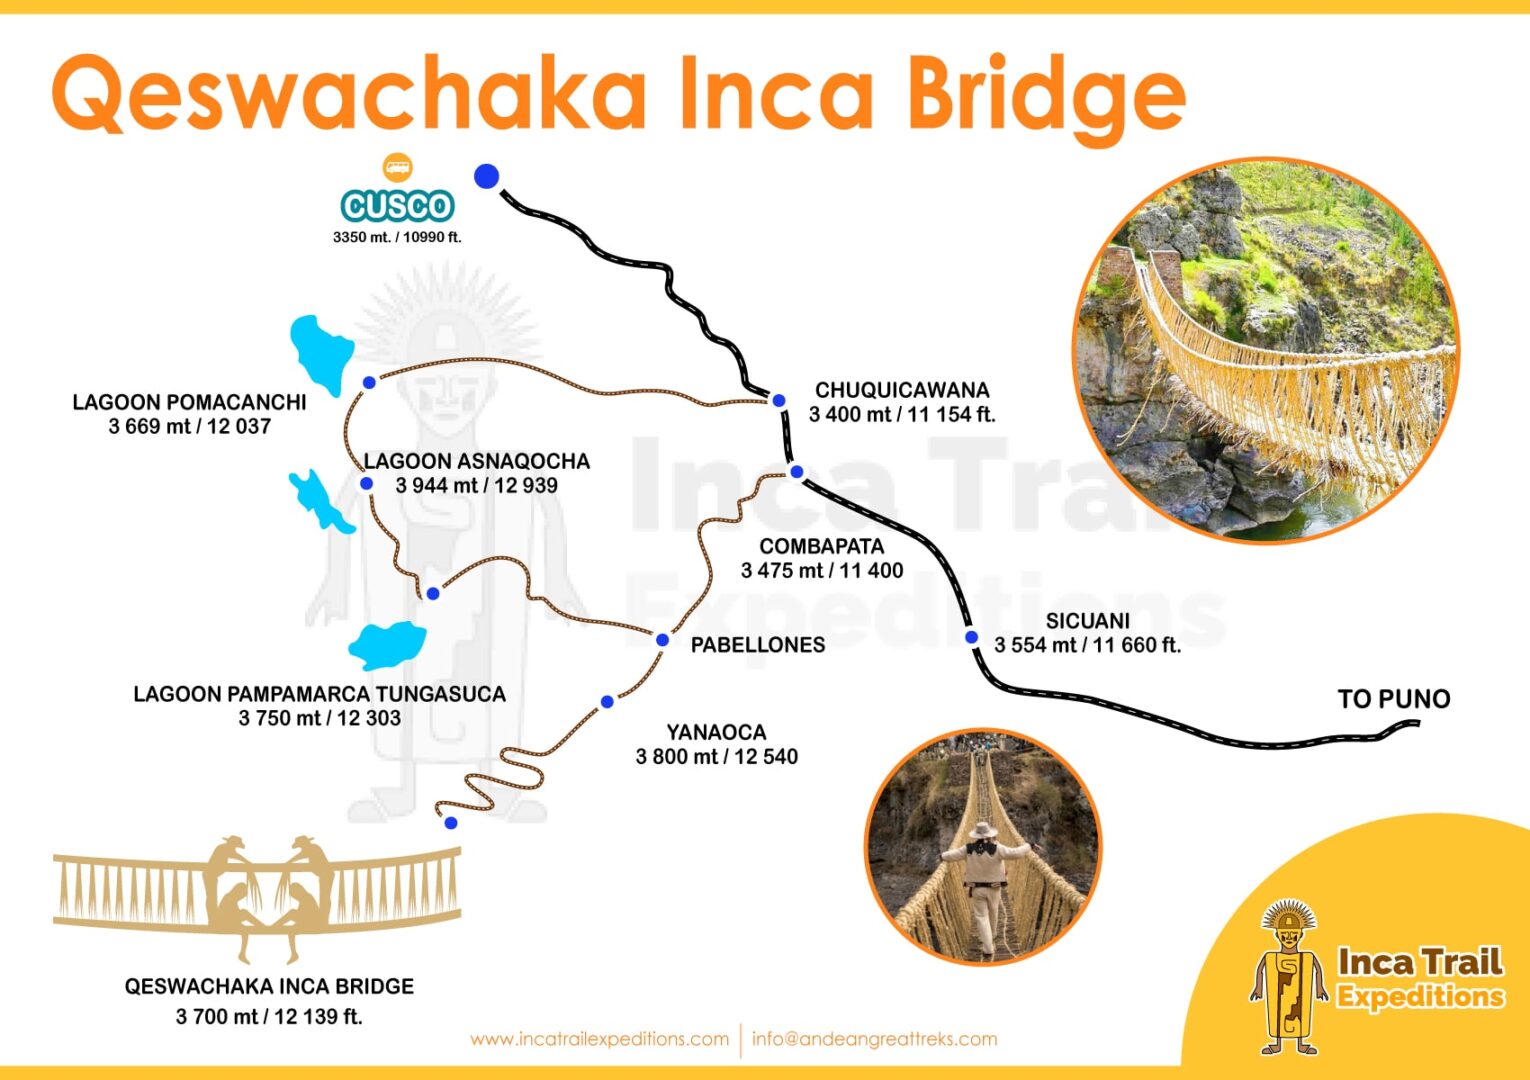 Queswachaka Inca Bridge 1 Day